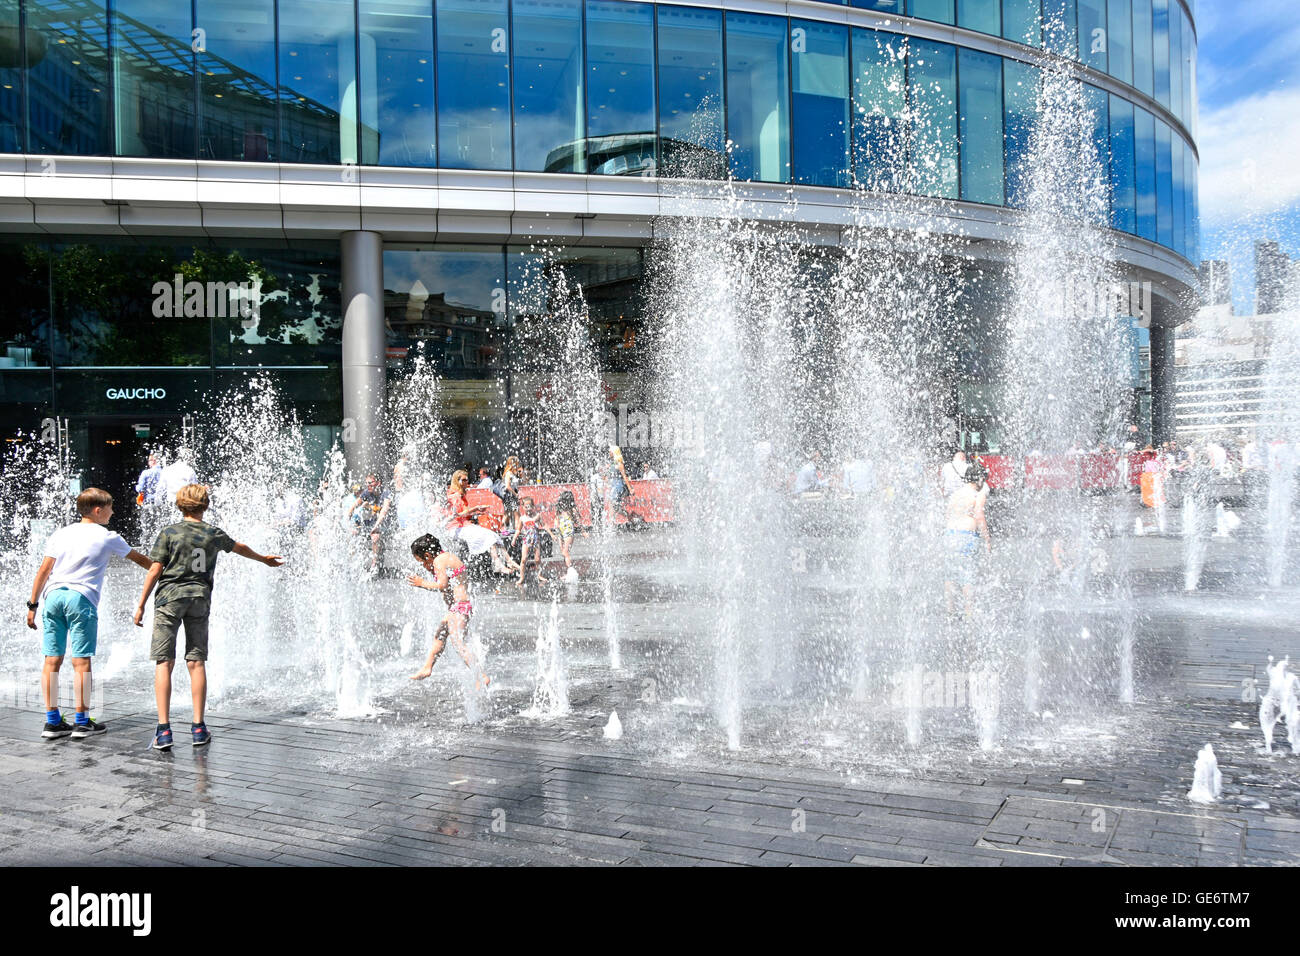 Wasserstrahlen erhebt sich über Pflasterdecke nach dem Zufallsprinzip Timings bei heißem Wetter in London UK Sommer wie Büroangestellte Mittagessen nehmen brechen & Kinder spielen in Brunnen Stockfoto